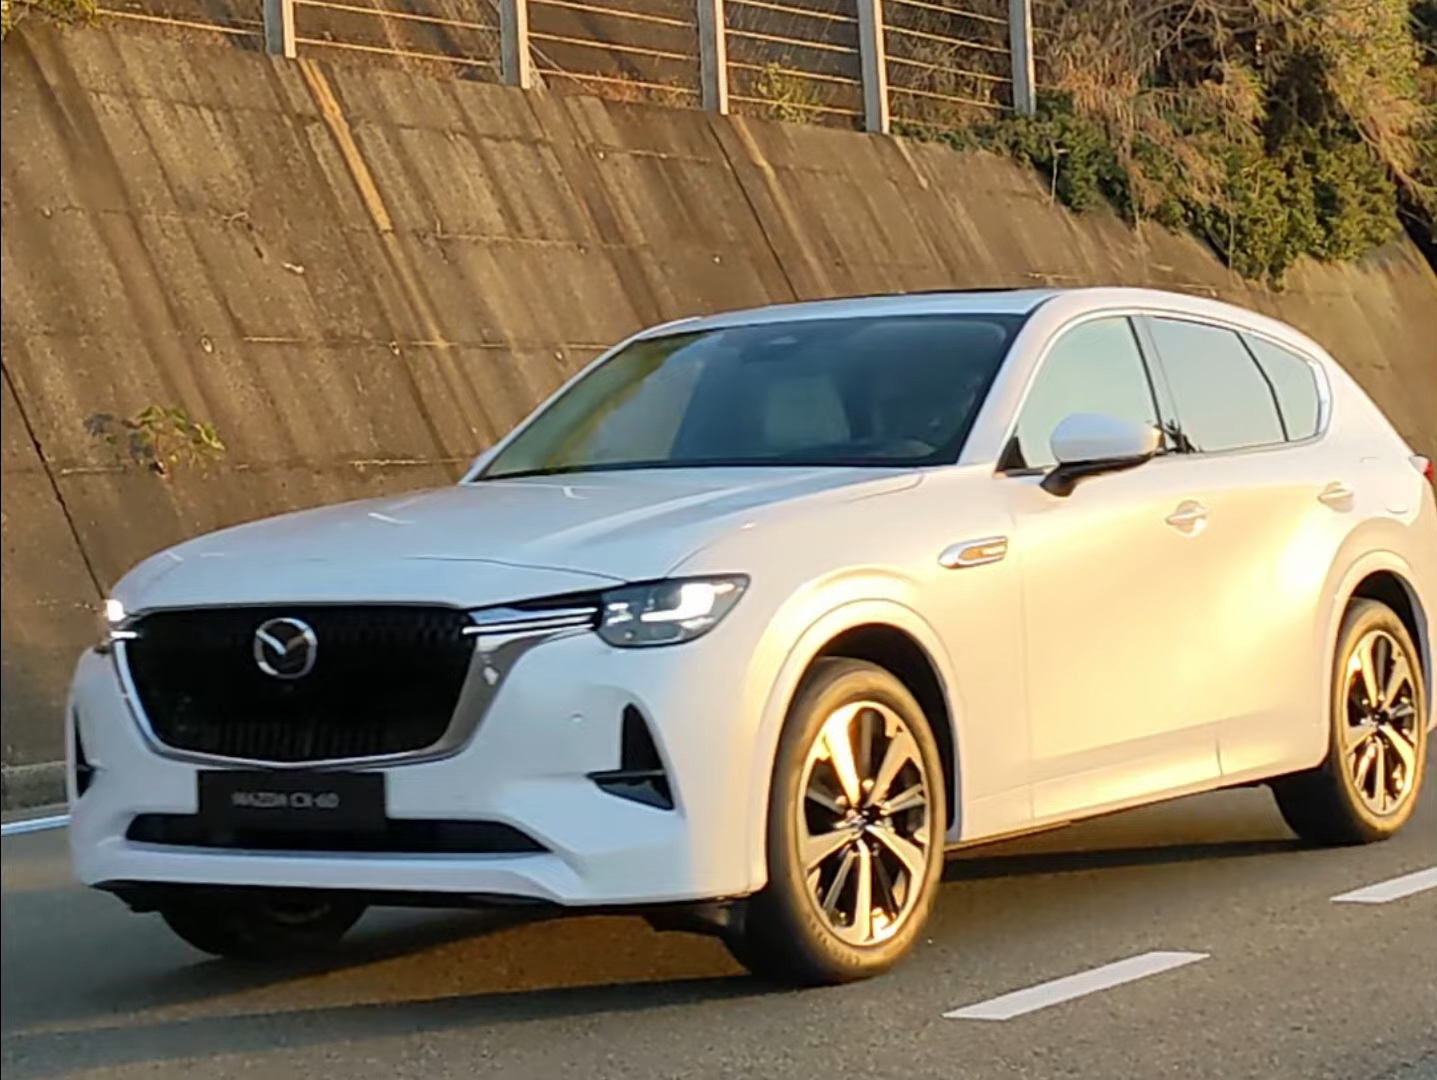 Egyre több információ érkezik a Mazda konnektoros hibridjéről